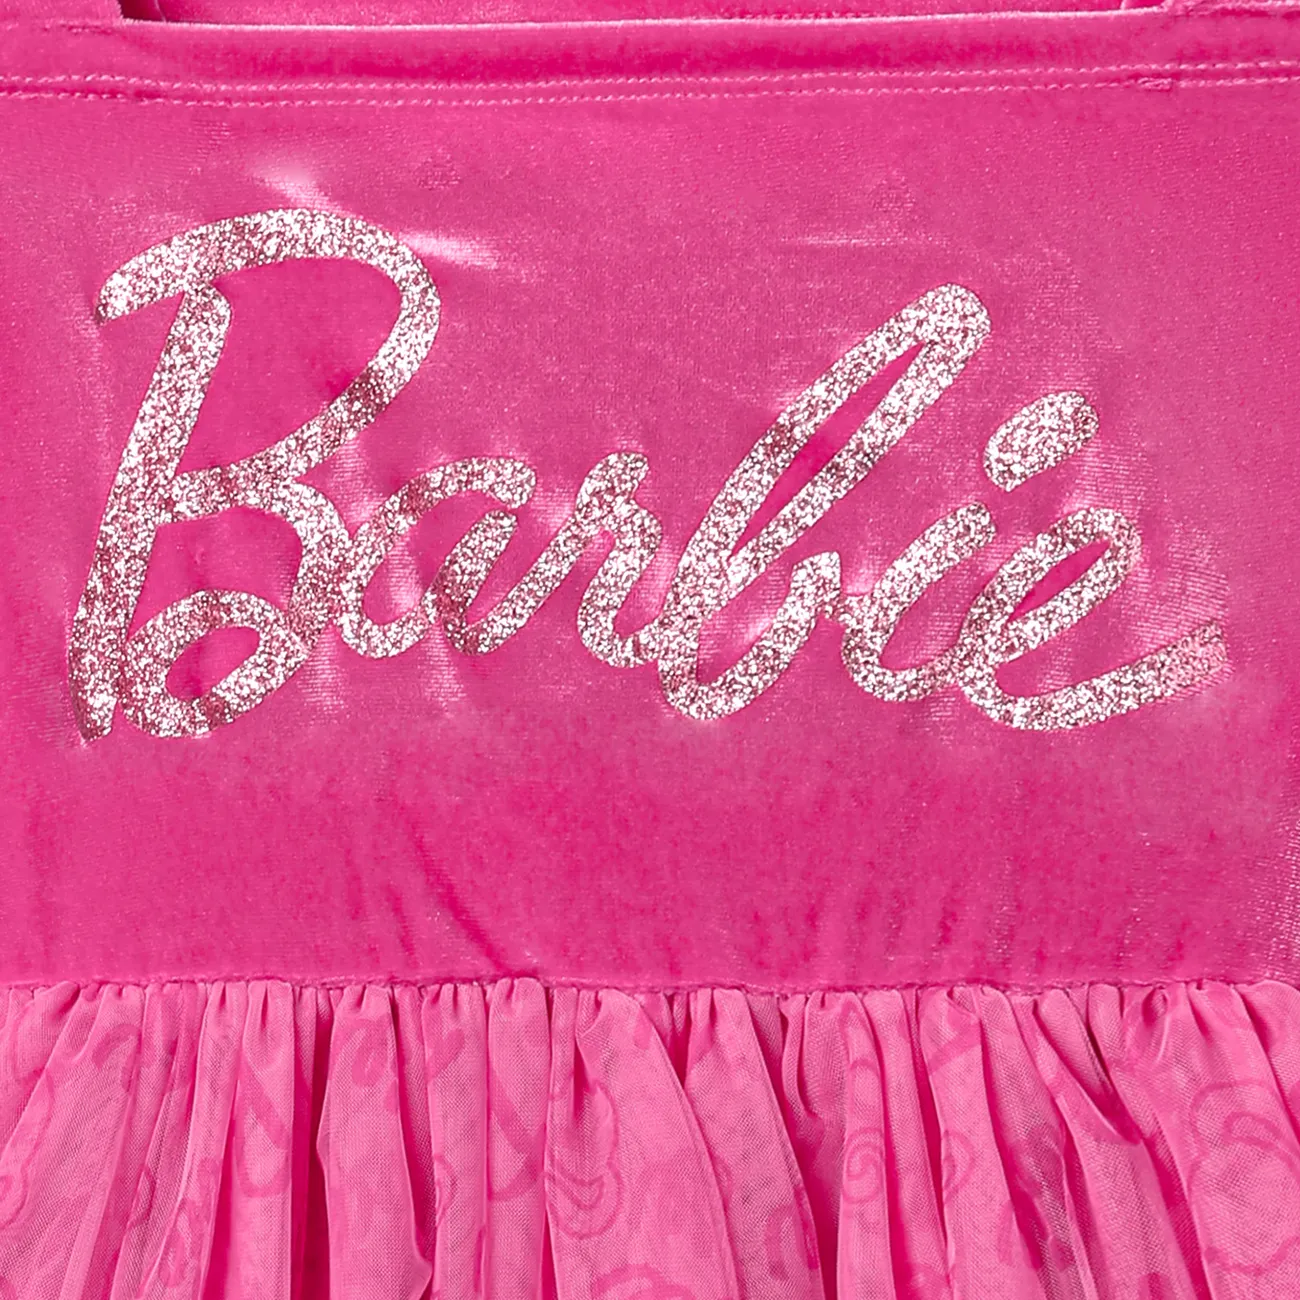 Barbie Pasqua Bambini Ragazza Multistrato Lettere Vestiti rosa big image 1